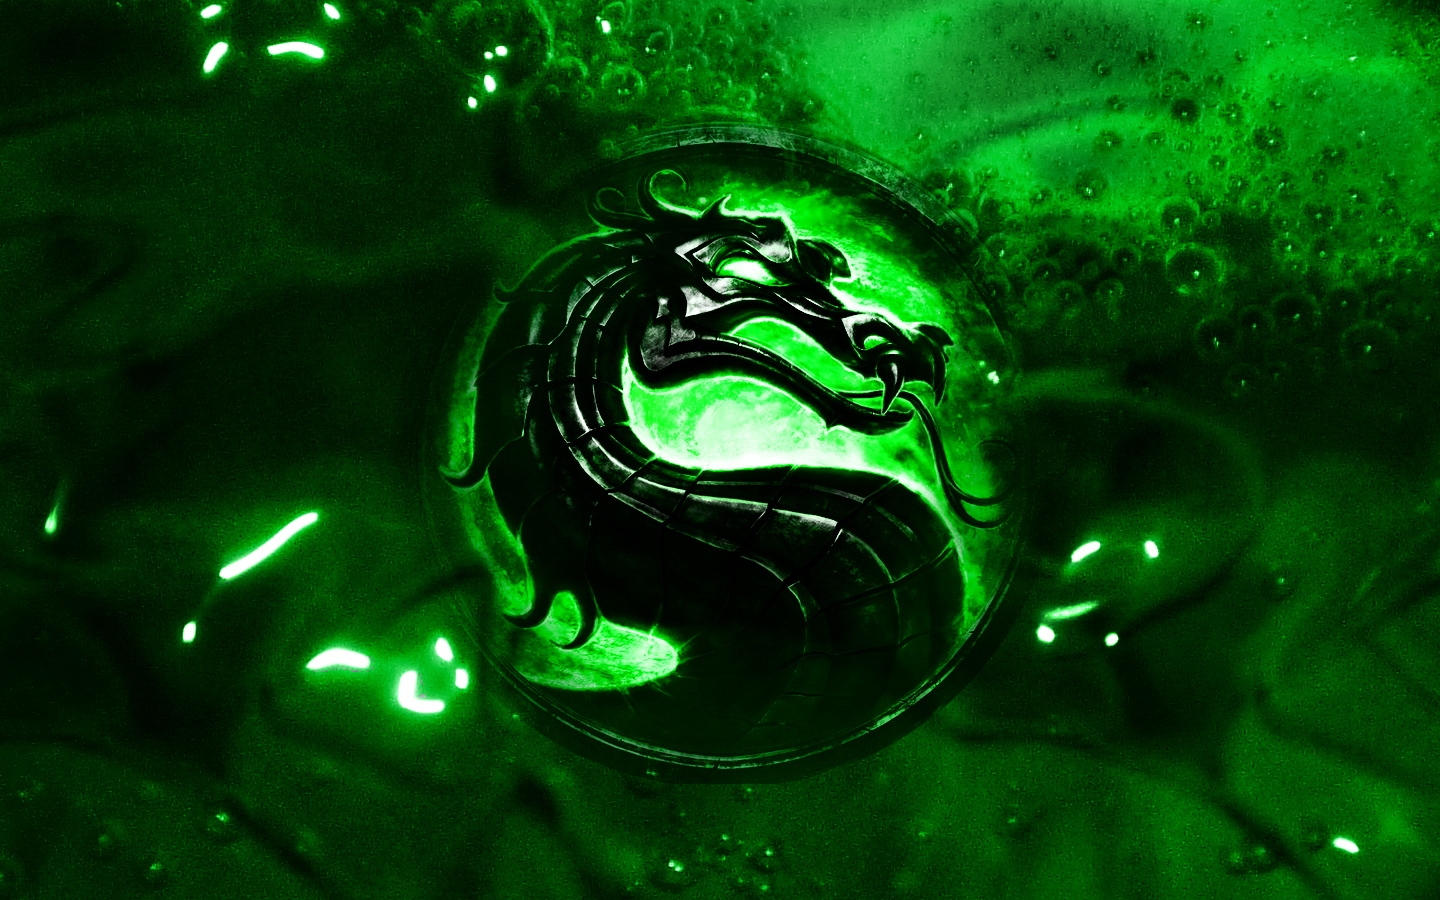 75+] Green Dragon Wallpaper - WallpaperSafari